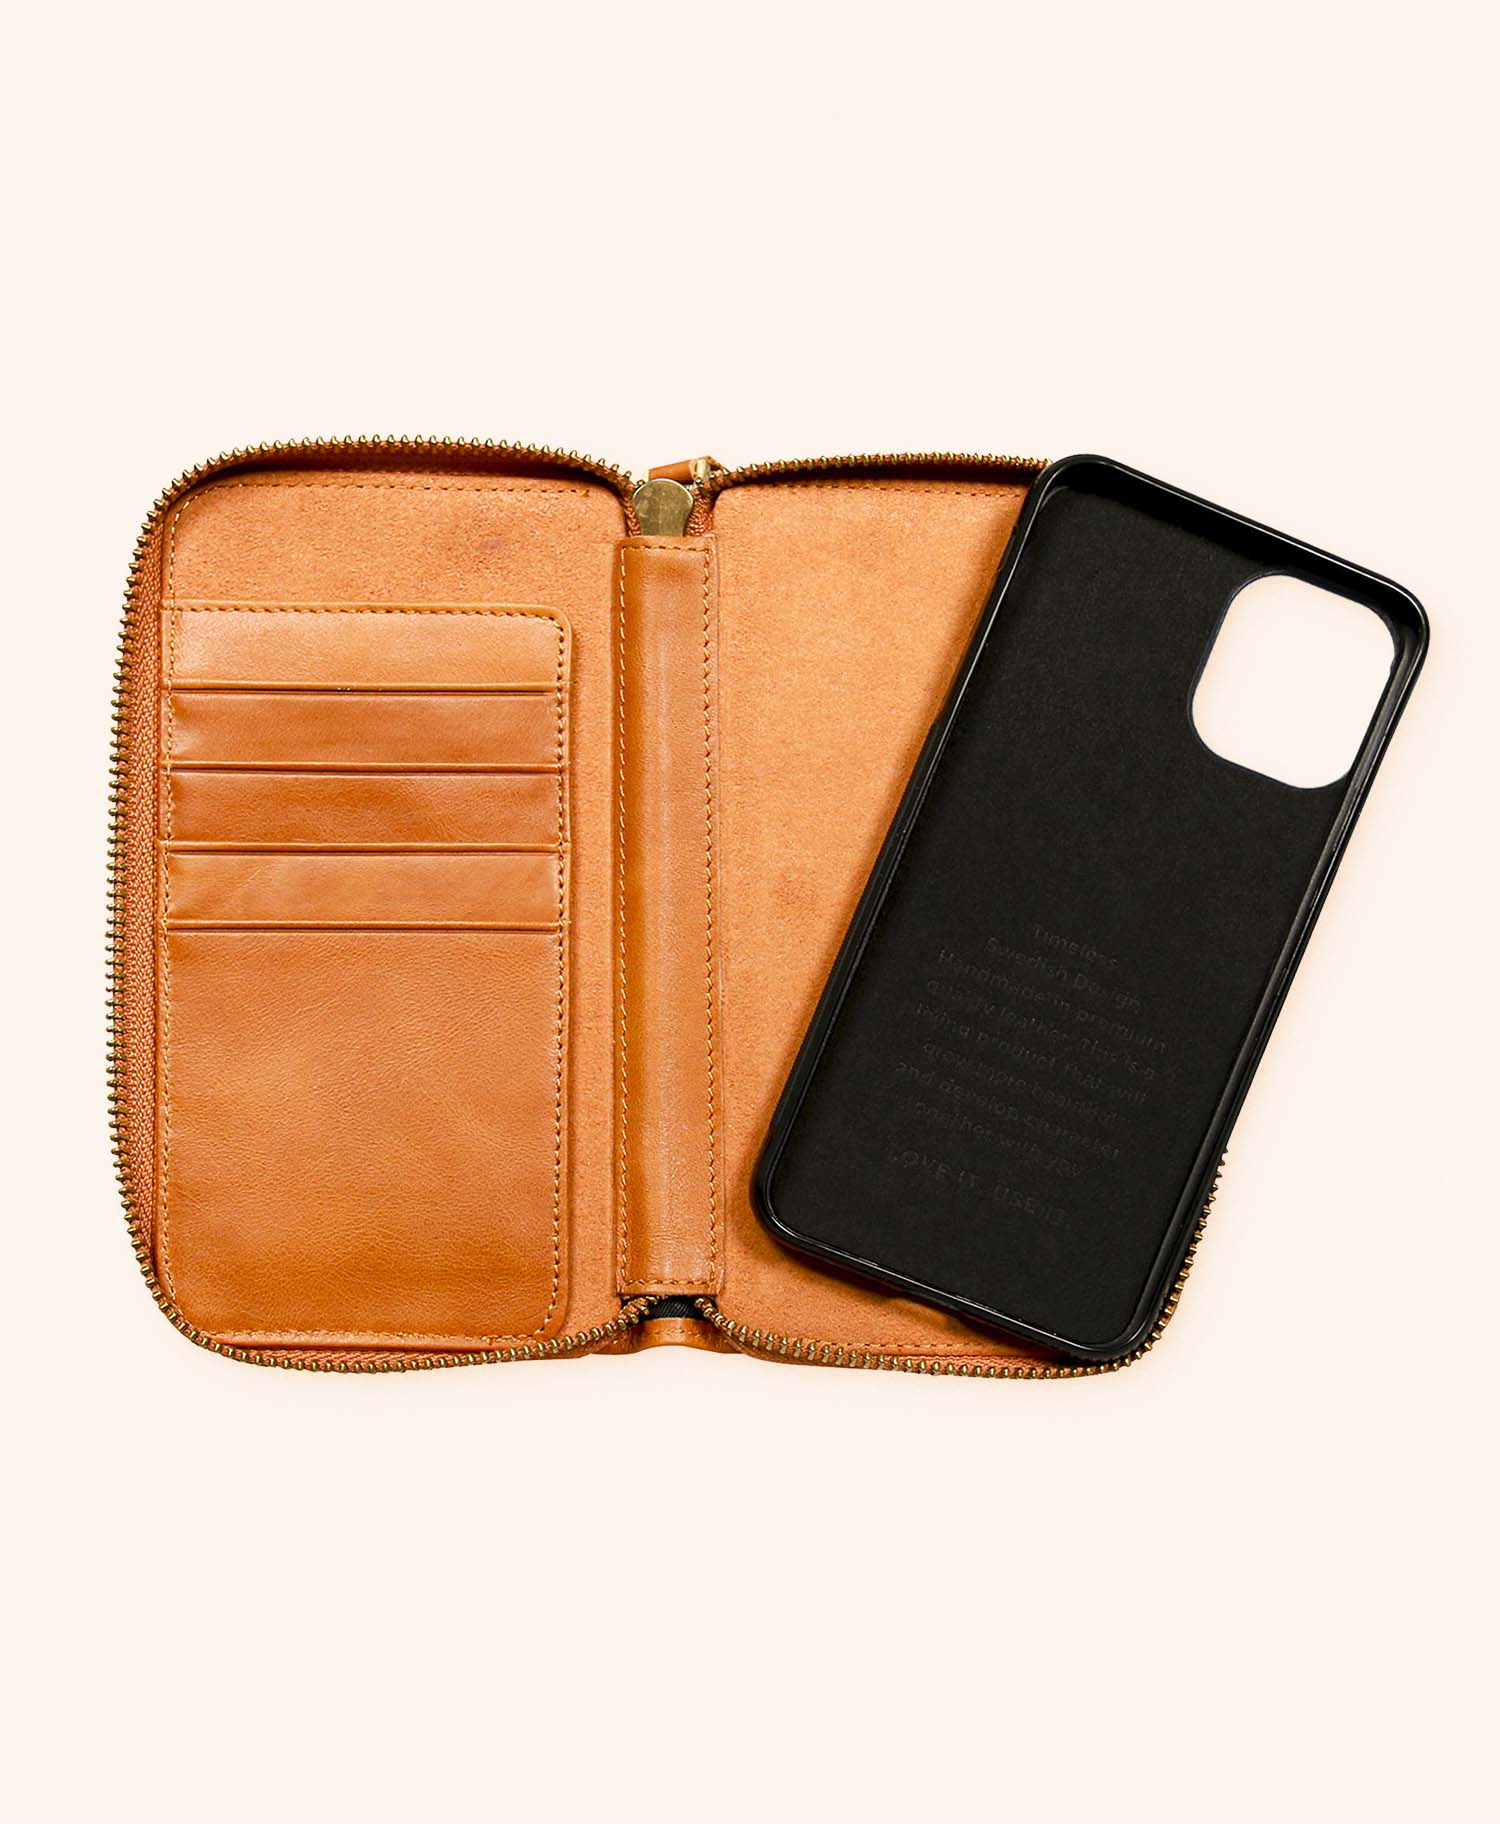 Greg cognac wallet iphone 11 - inside